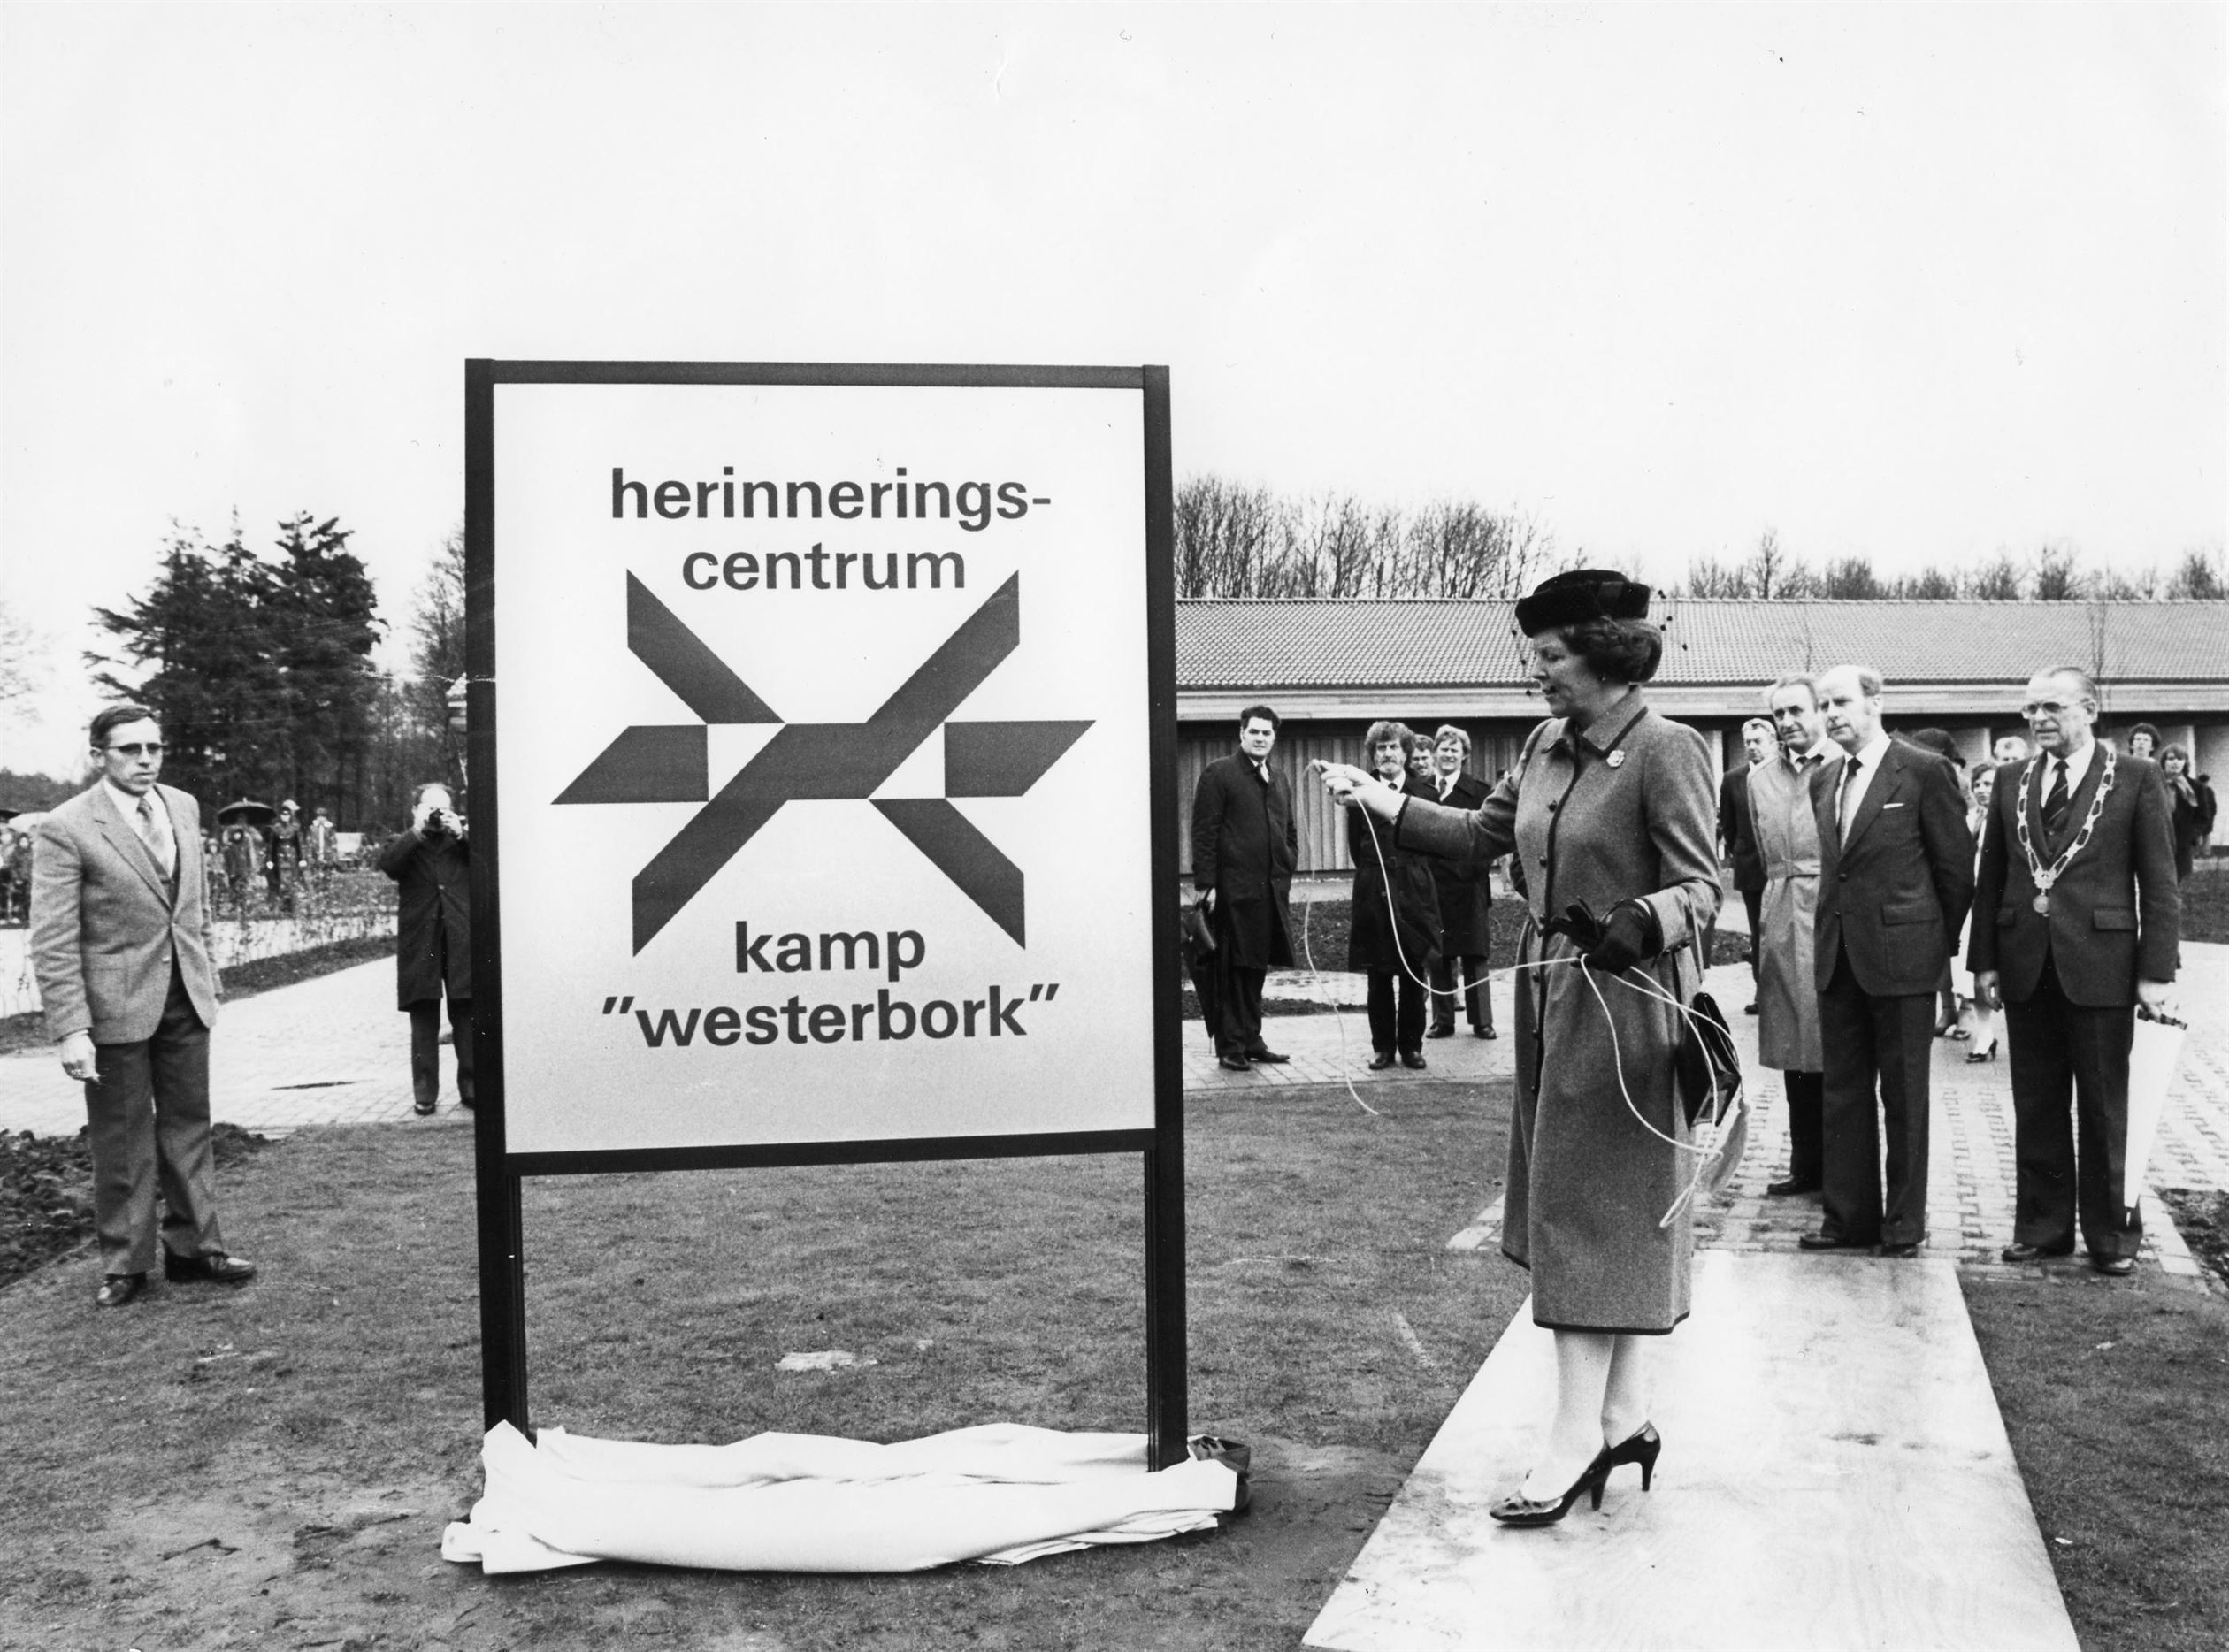 VERWACHT: De Herinnering aan kamp Westerbork